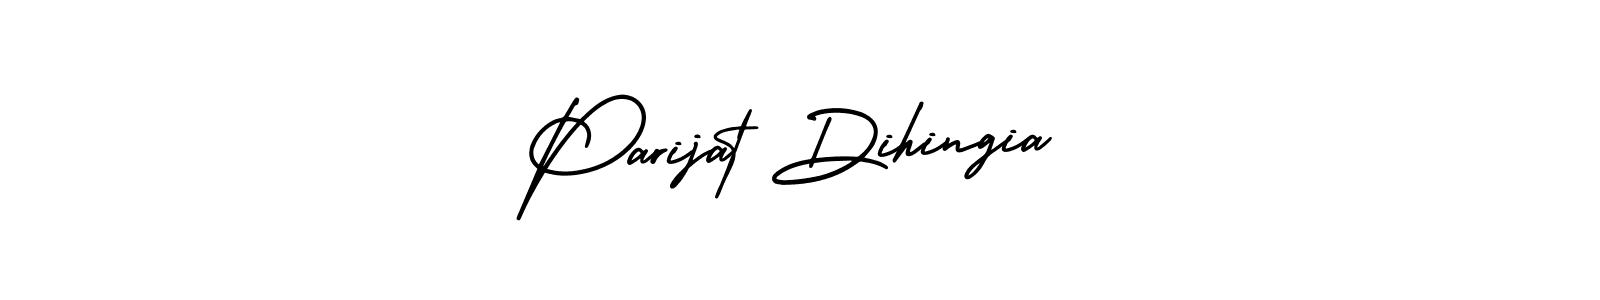 How to Draw Parijat Dihingia signature style? AmerikaSignatureDemo-Regular is a latest design signature styles for name Parijat Dihingia. Parijat Dihingia signature style 3 images and pictures png